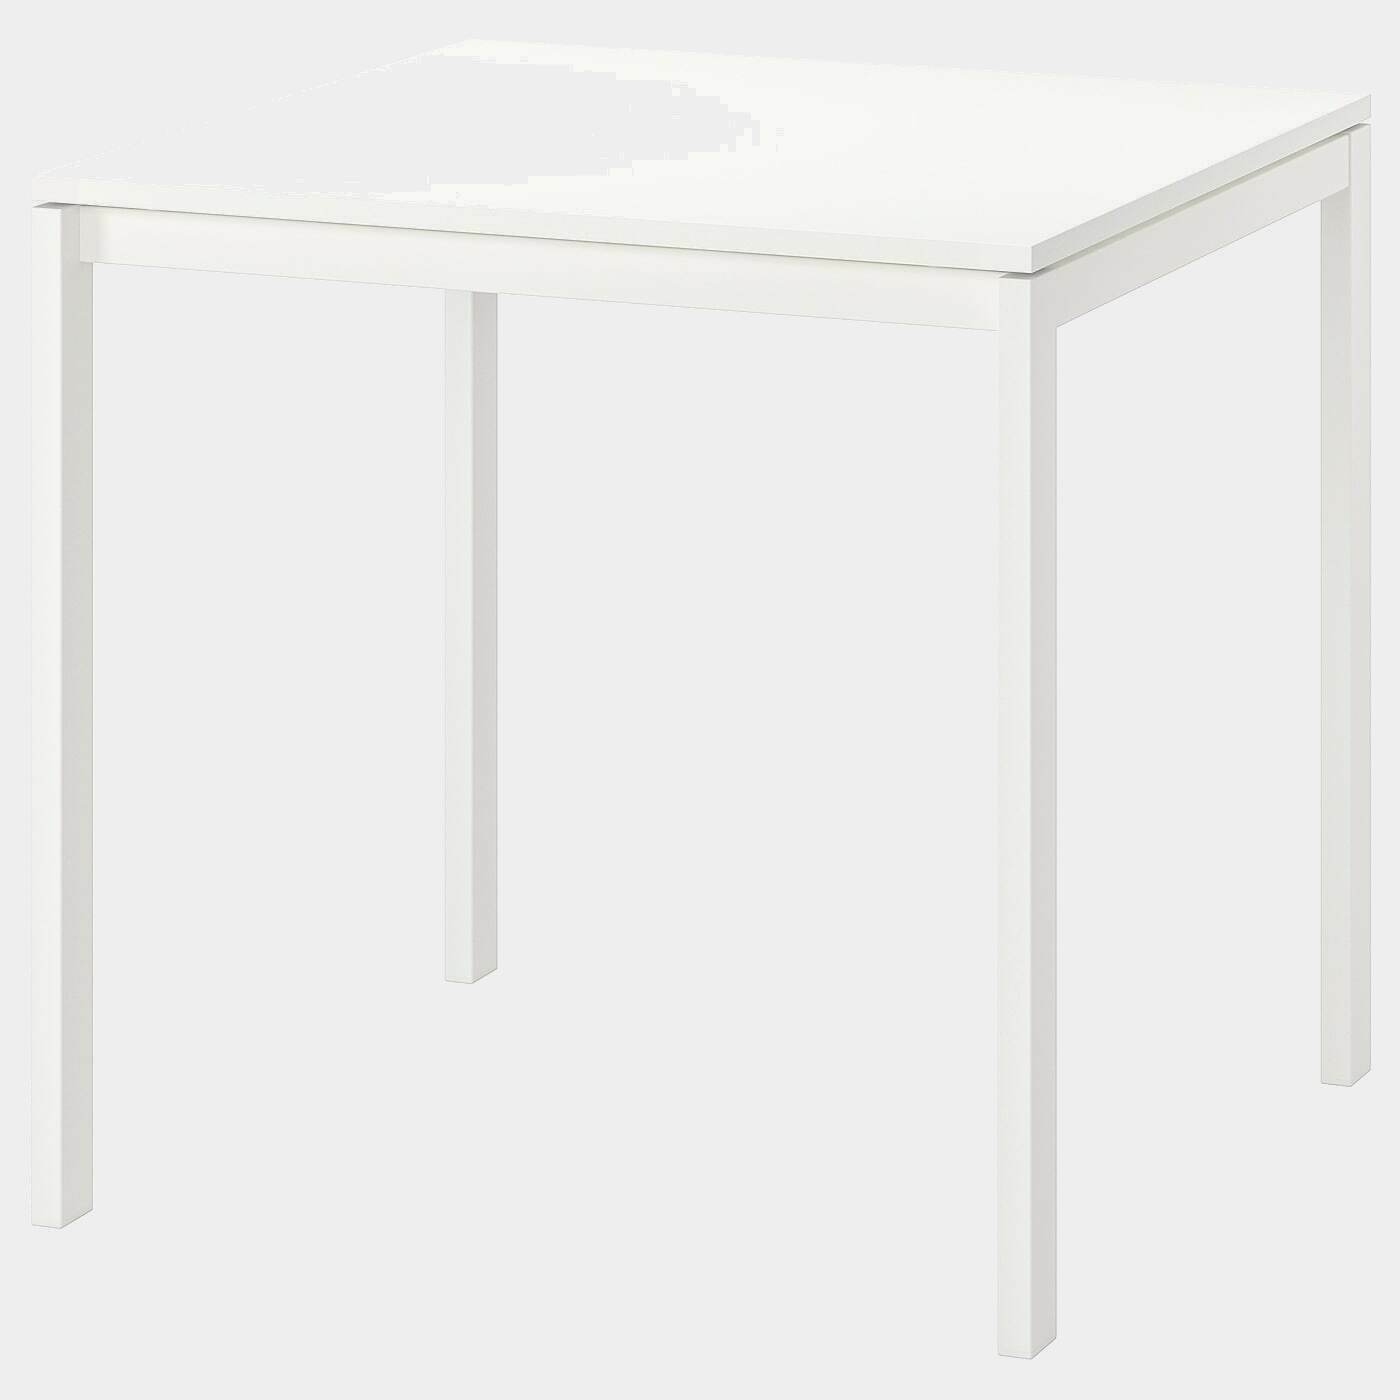 MELLTORP Tisch  - Esstische - Möbel Ideen für dein Zuhause von Home Trends. Möbel Trends von Social Media Influencer für dein Skandi Zuhause.